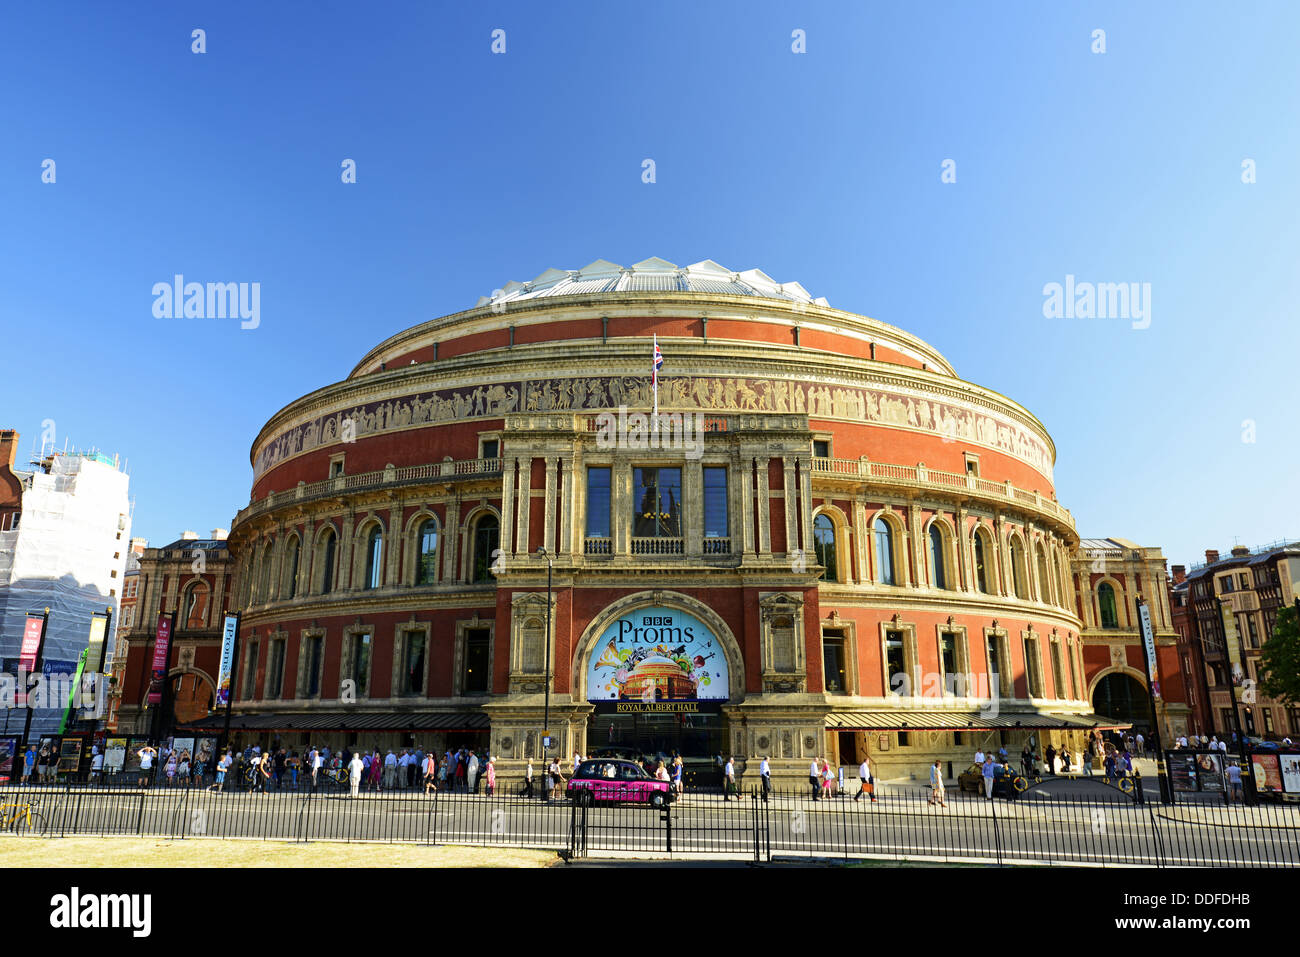 Royal Albert Hall, London, England, UK Stock Photo